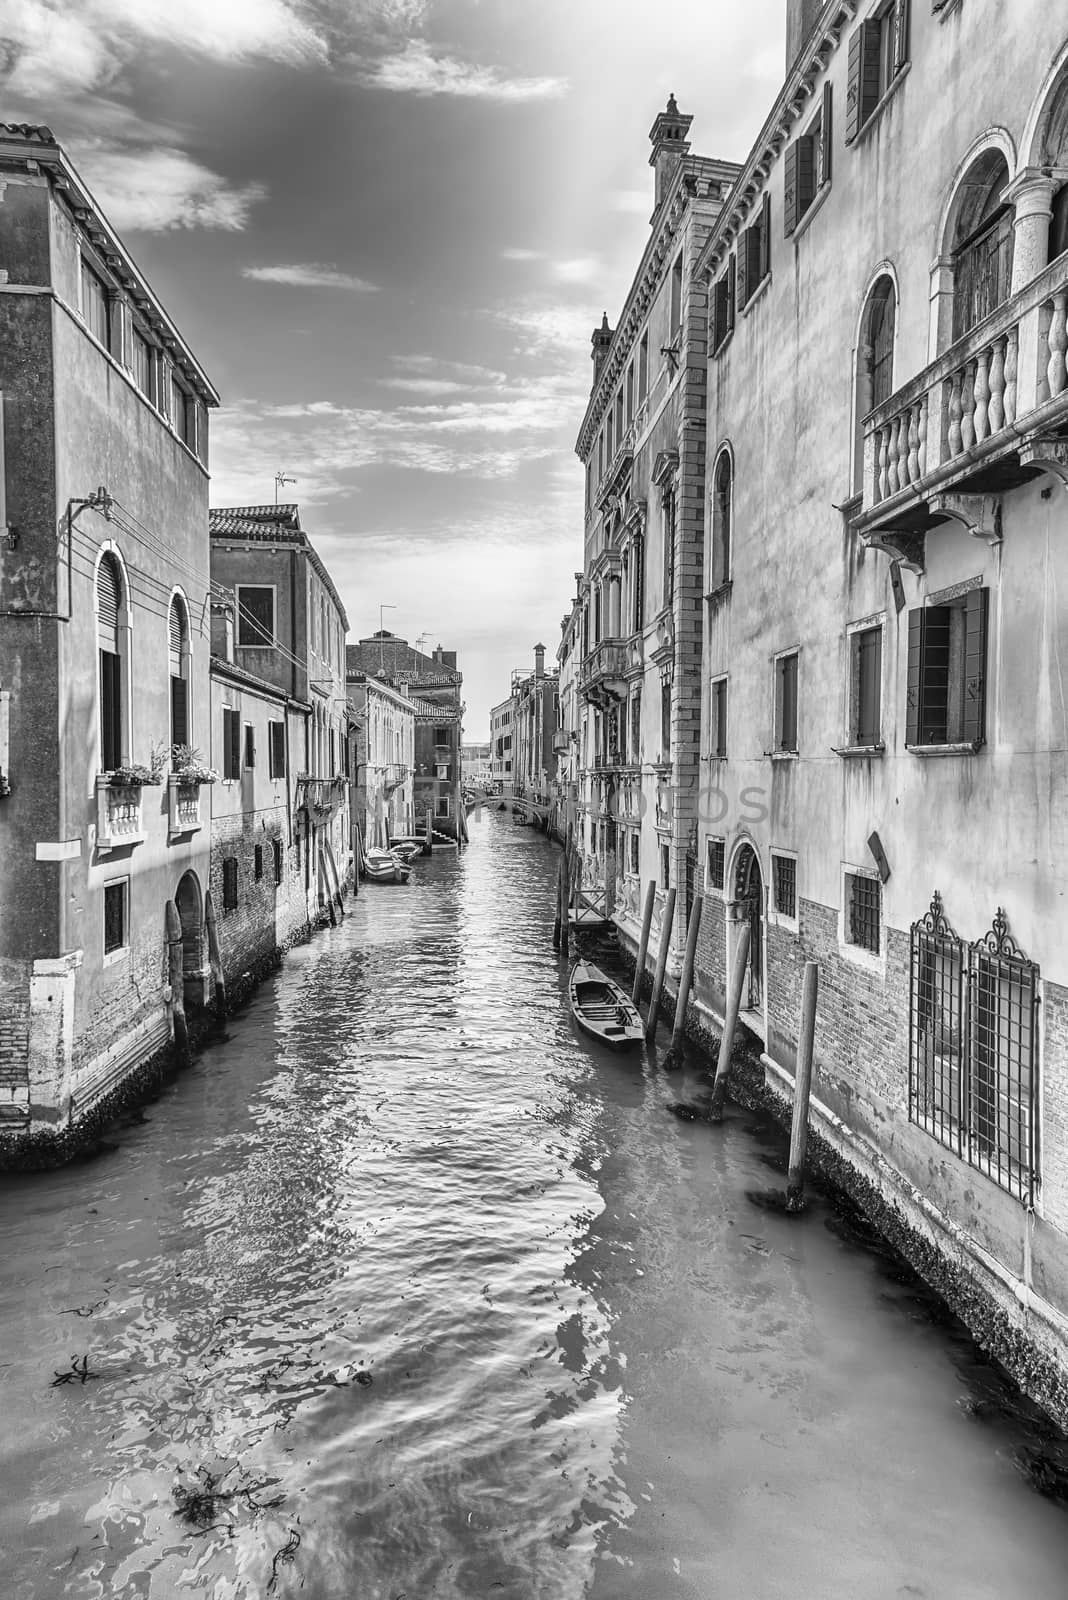 View over the canal Rio de la Pleta, Venice, Italy by marcorubino